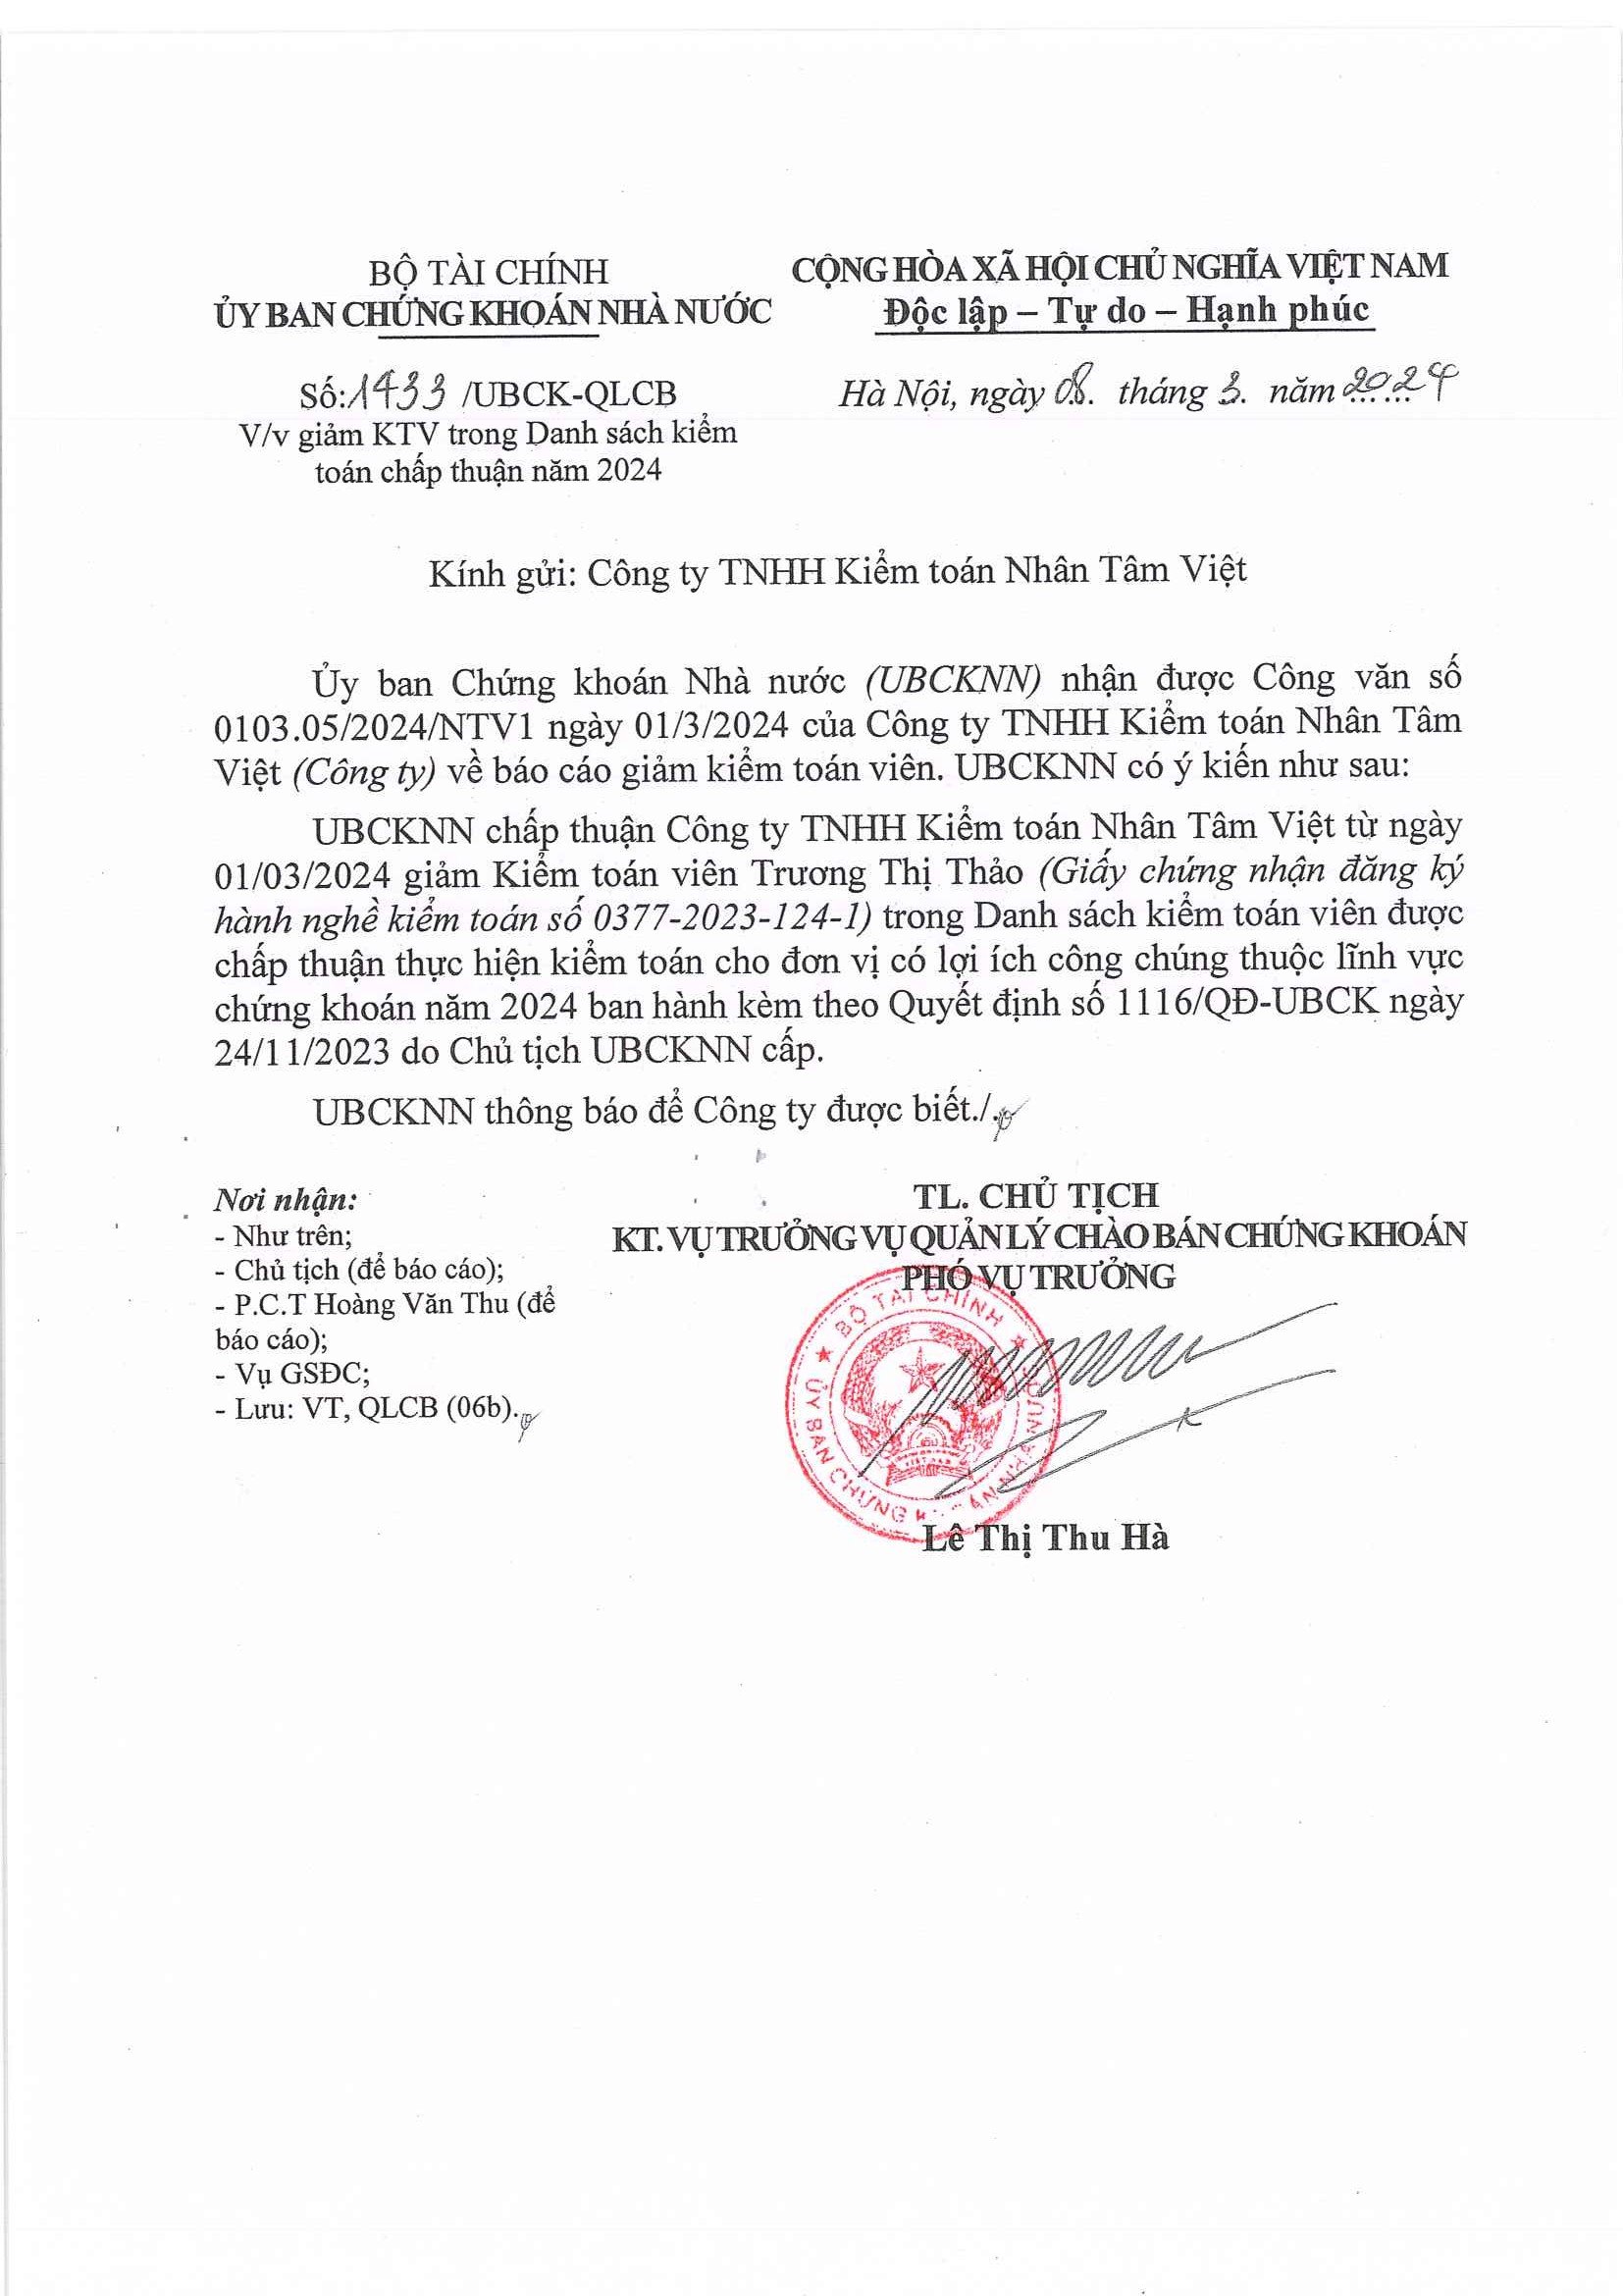 Cập nhật thông tin Báo cáo minh bạch tháng 3/2024 (Thông Báo Giảm kiểm toán vi��n Trương Thị Thảo trong danh sách Kiểm toán viên được kiểm toán cho các đơn vị có LICC năm 2024)